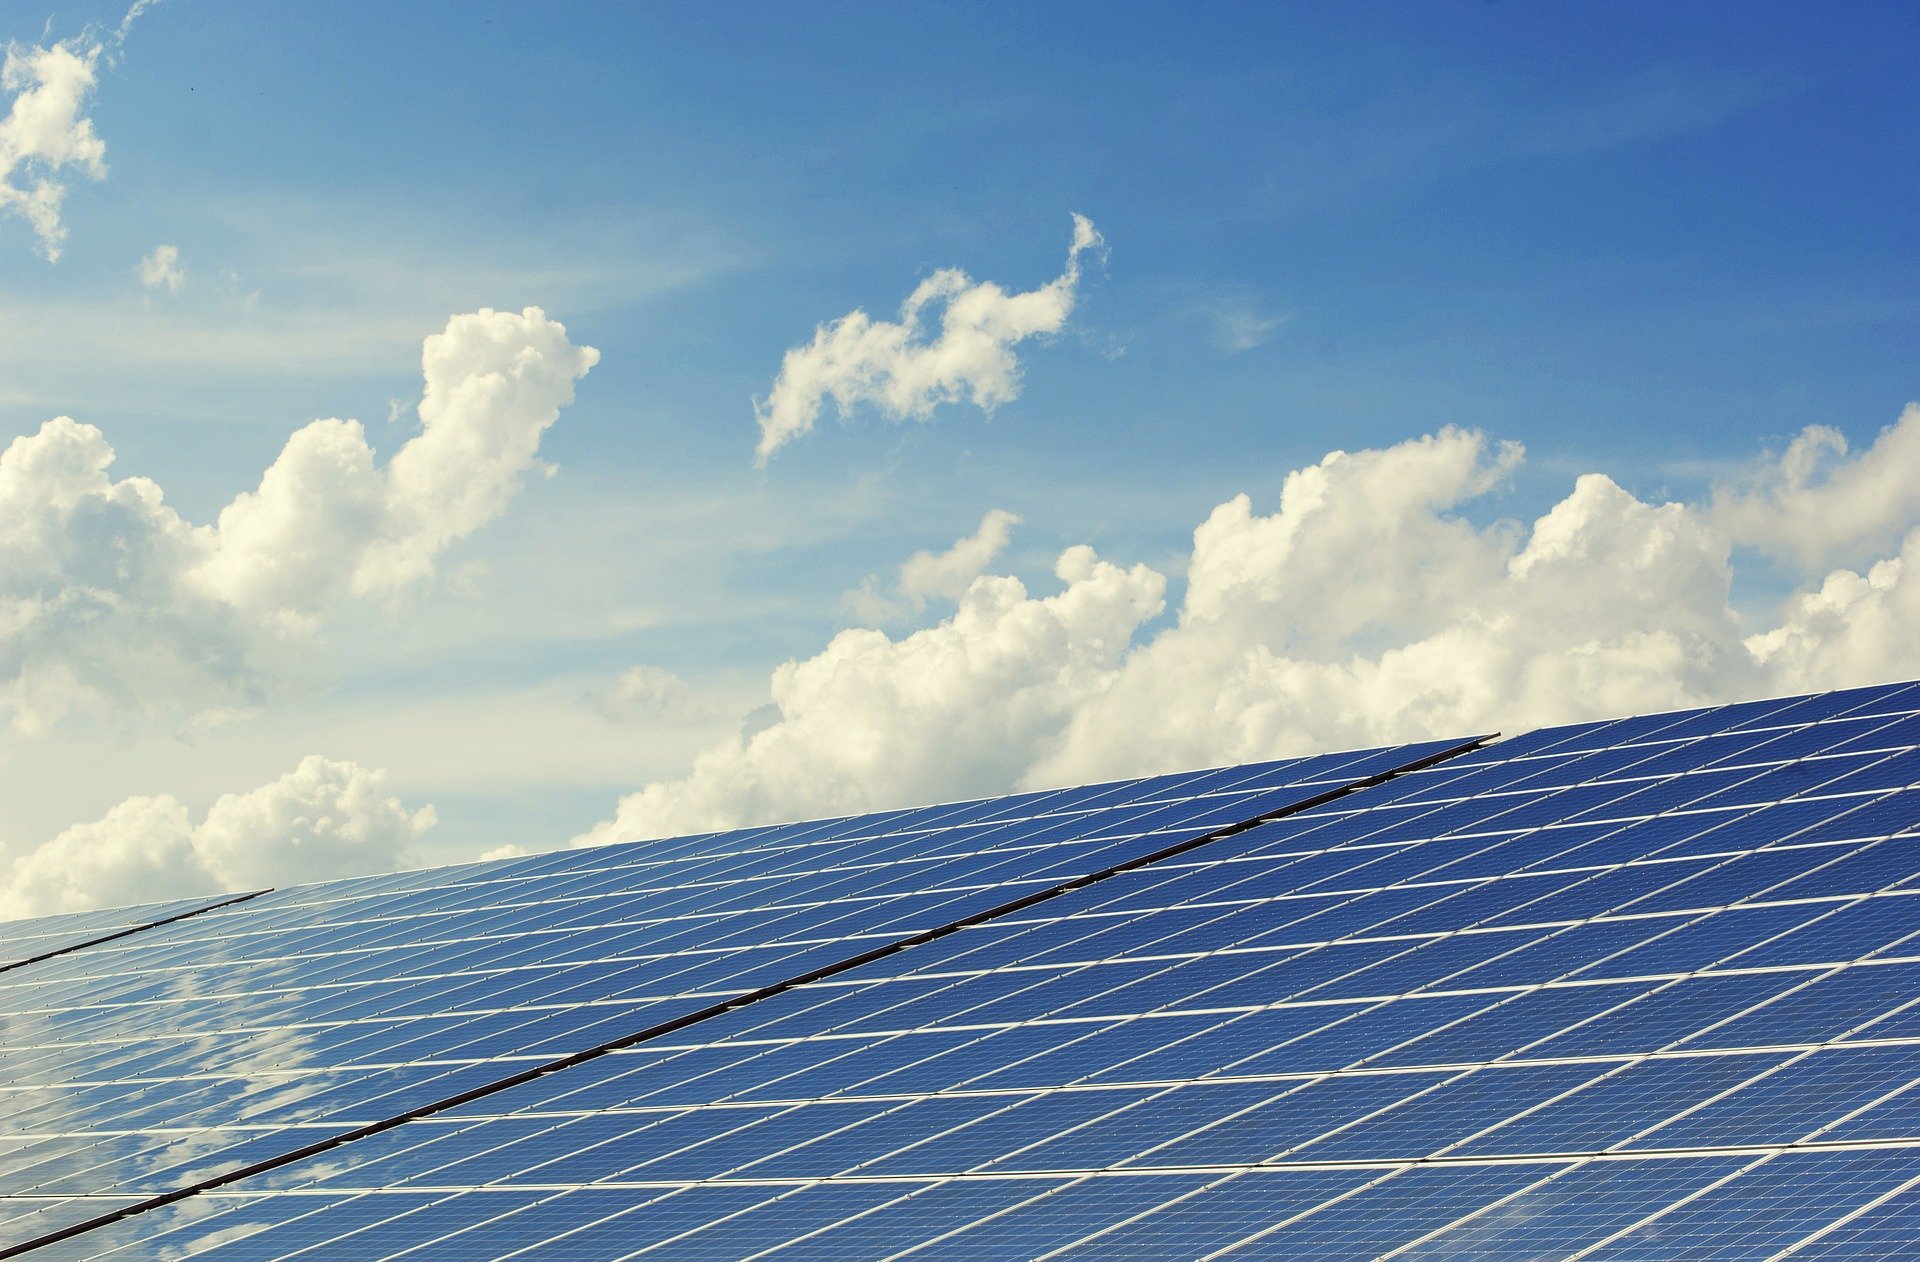 カーボンニュートラル・脱炭素化の鍵を握る再生可能エネルギー!太陽光